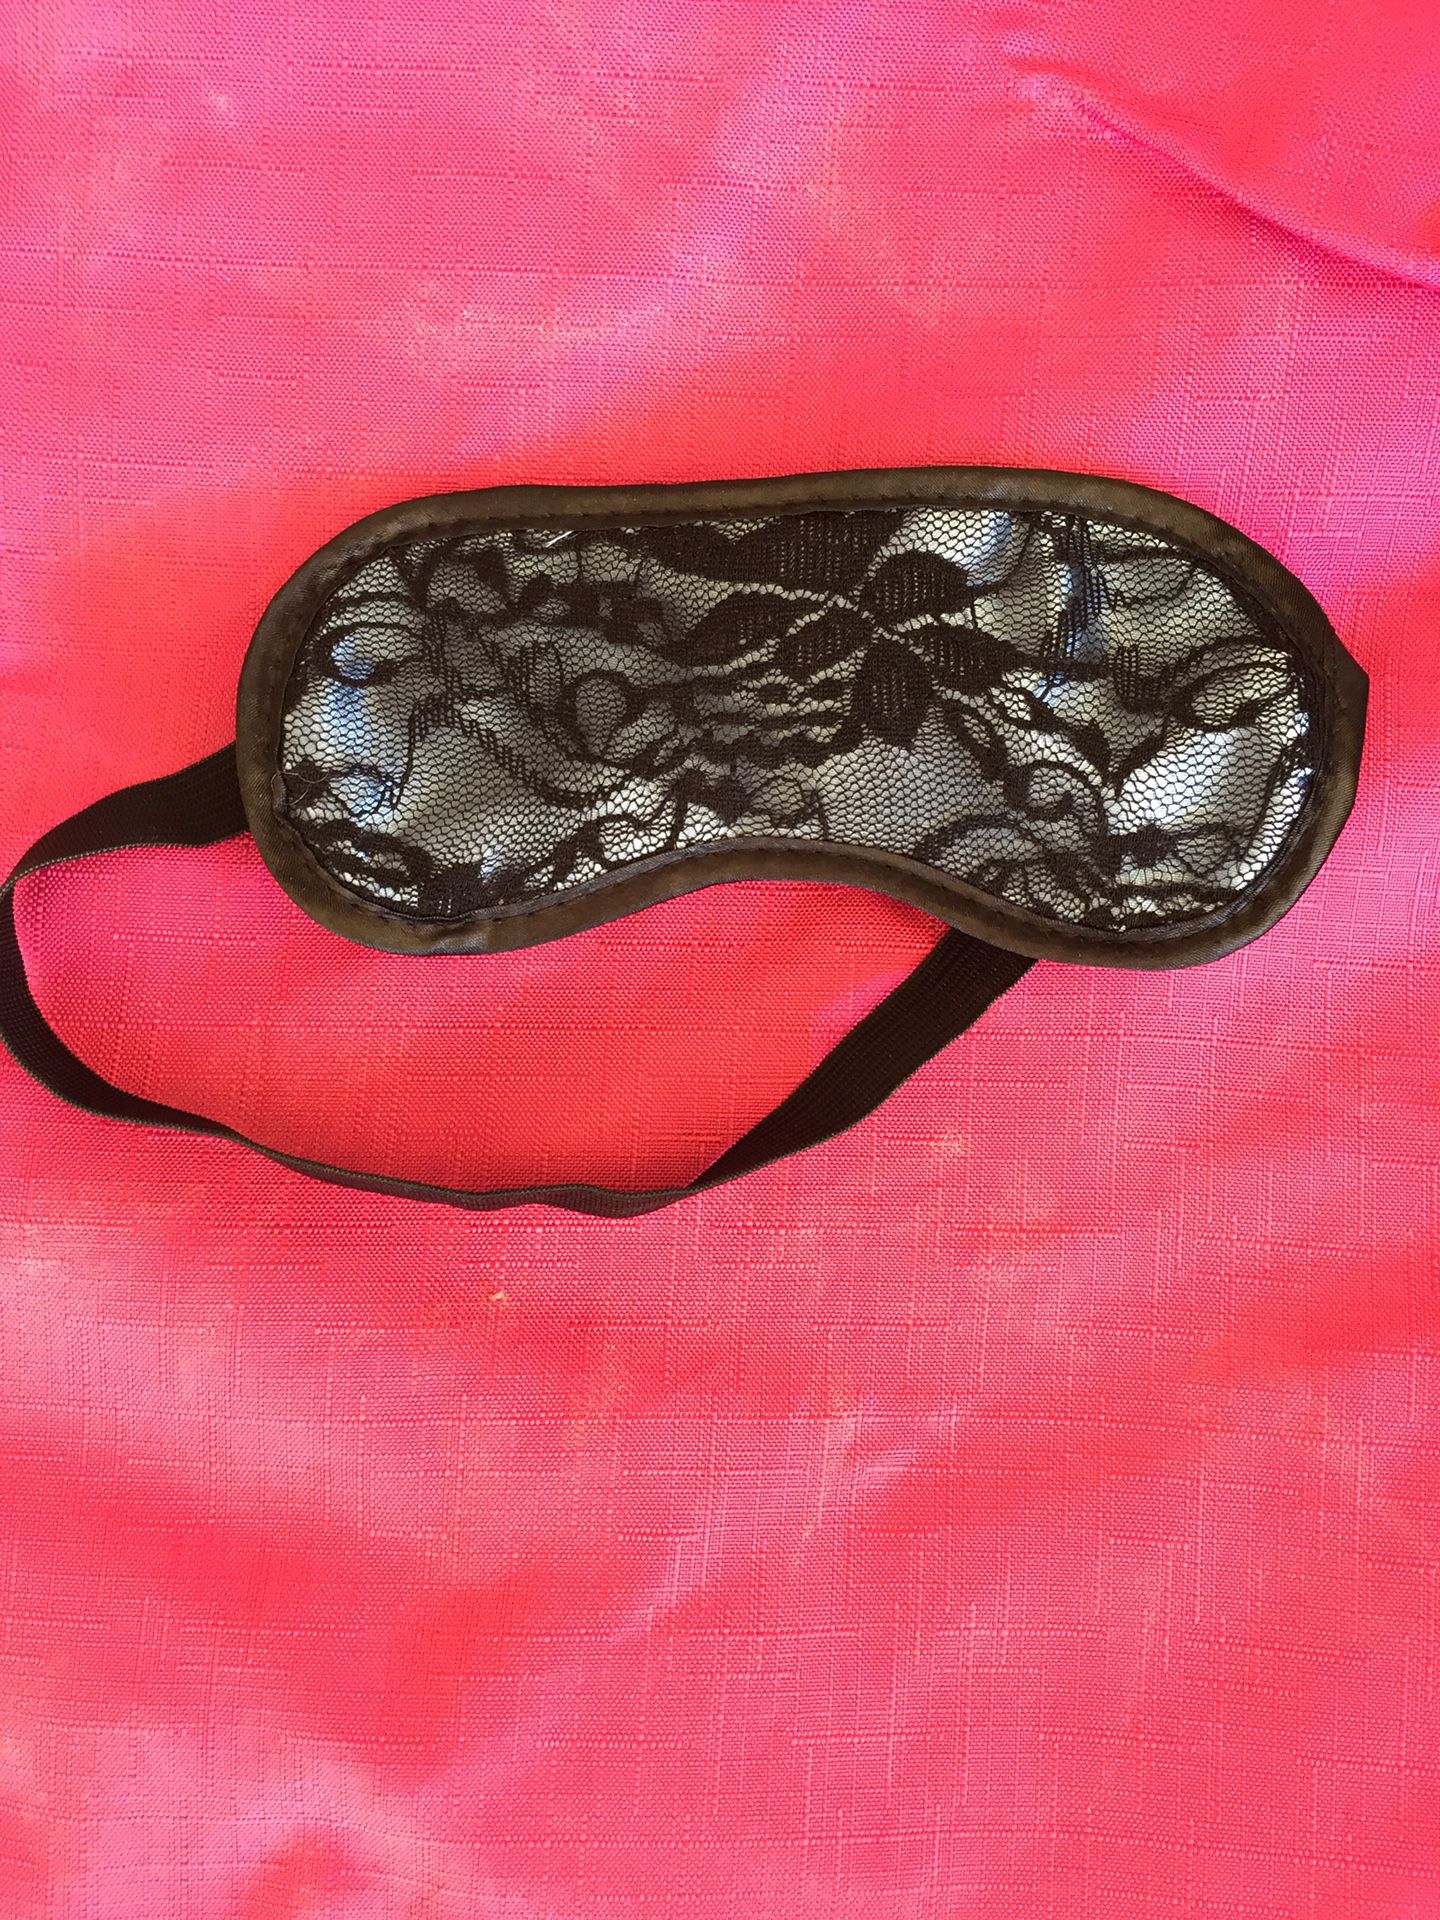 Sleep mask blindfold